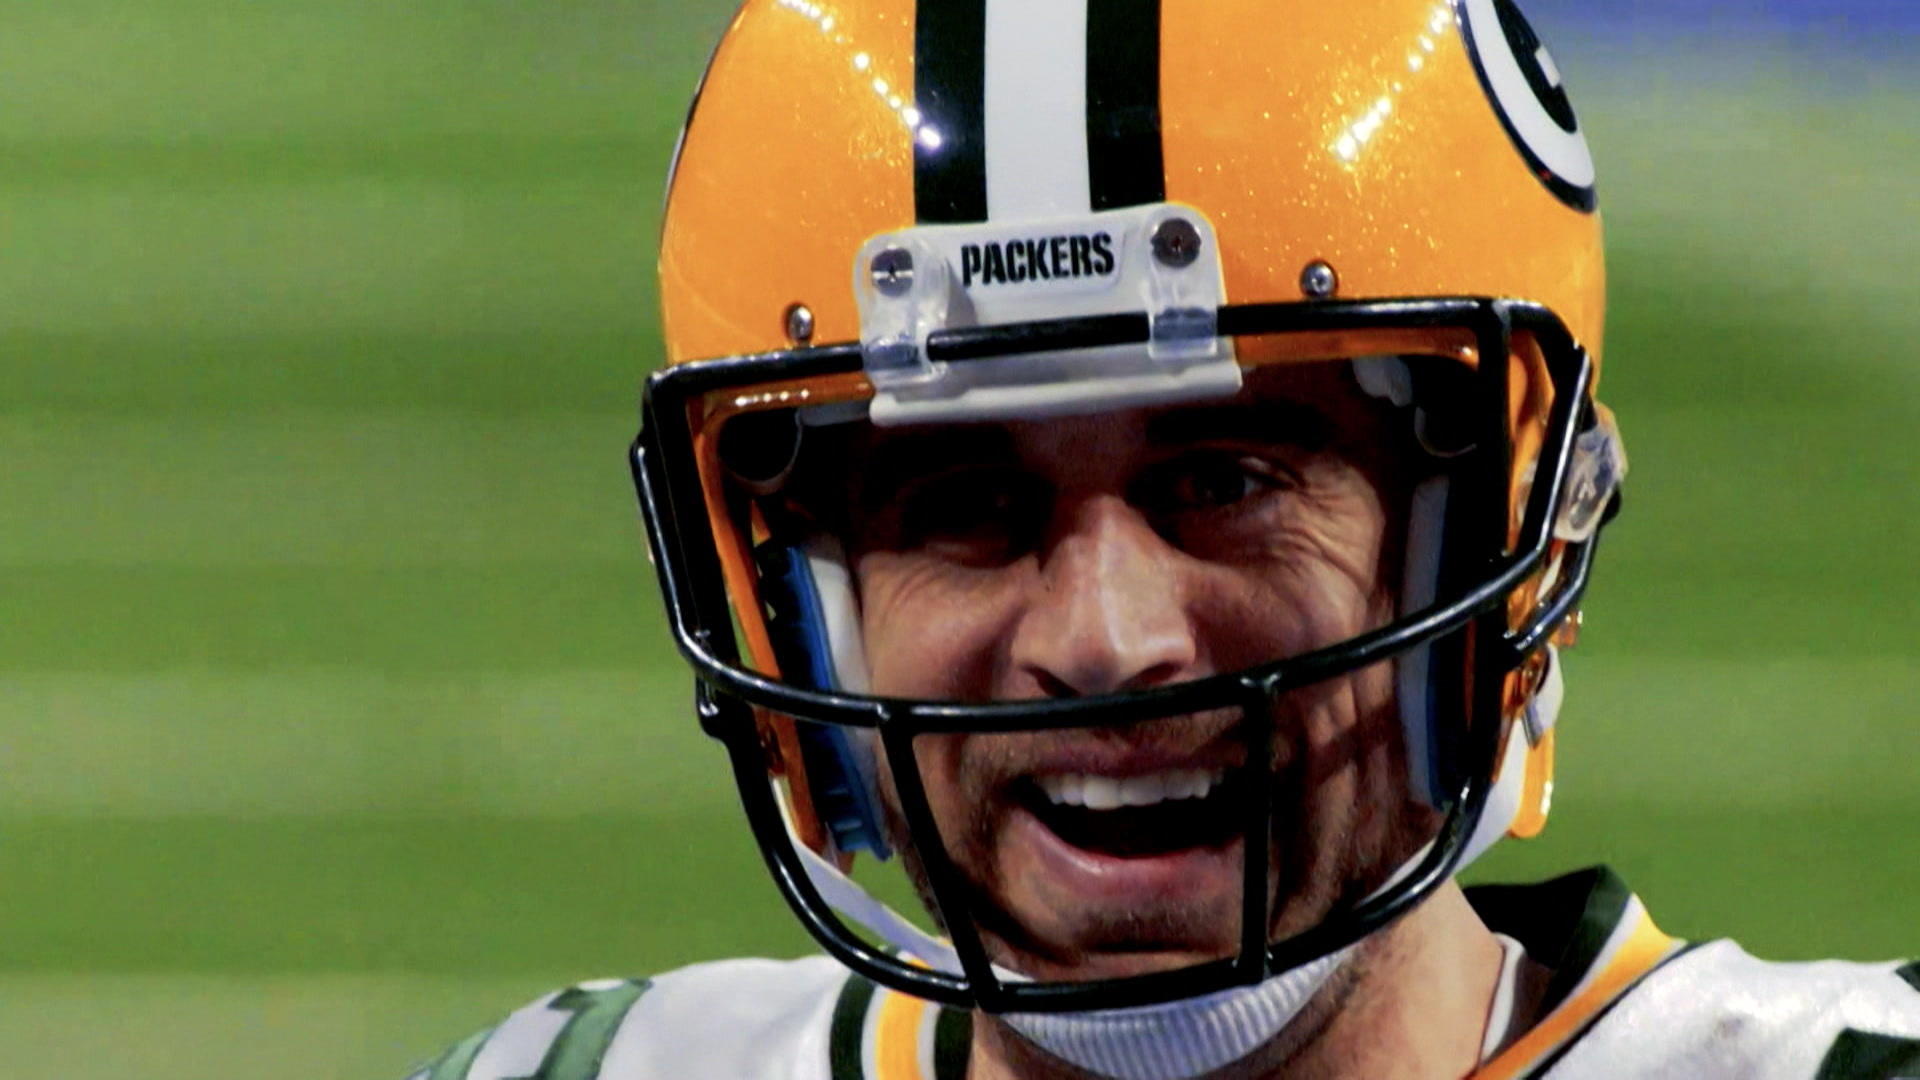 NFL-Star Rodgers vor neuem Abenteuer "Bin kein Messias"